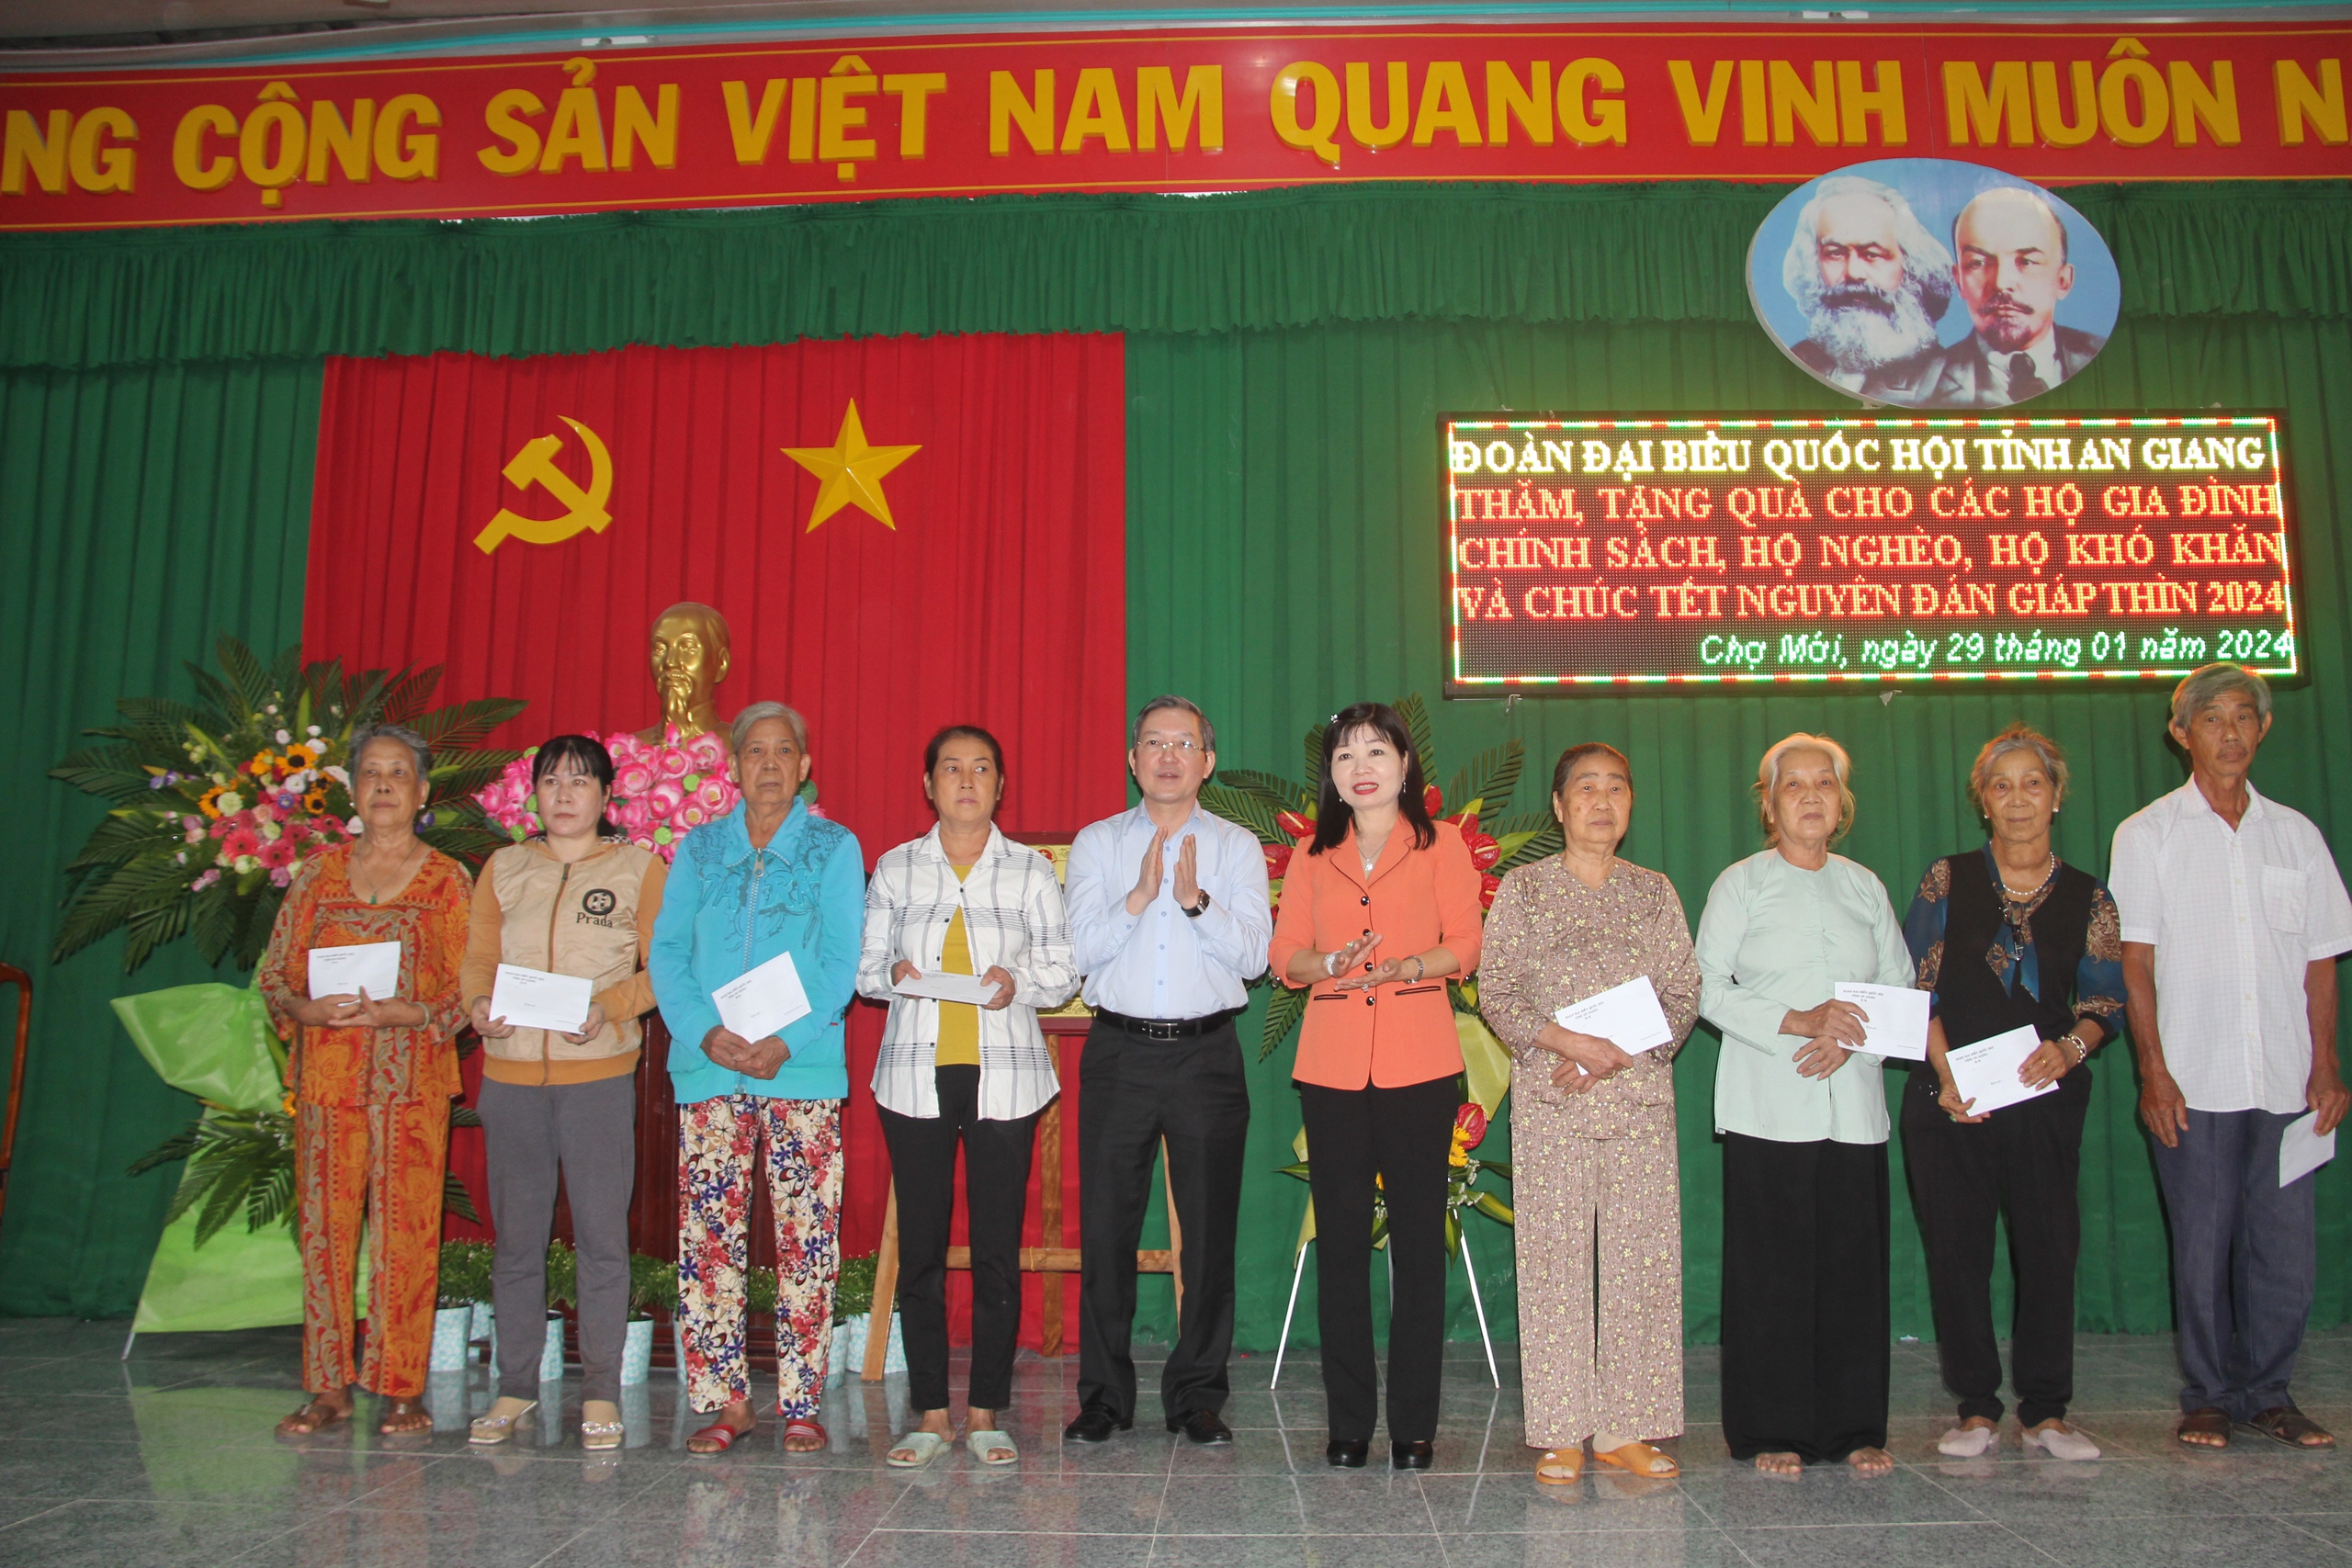 Chủ tịch Hội NDVN Lương Quốc Đoàn trao quà Tết cho người dân tại 4 địa phương của An Giang- Ảnh 2.